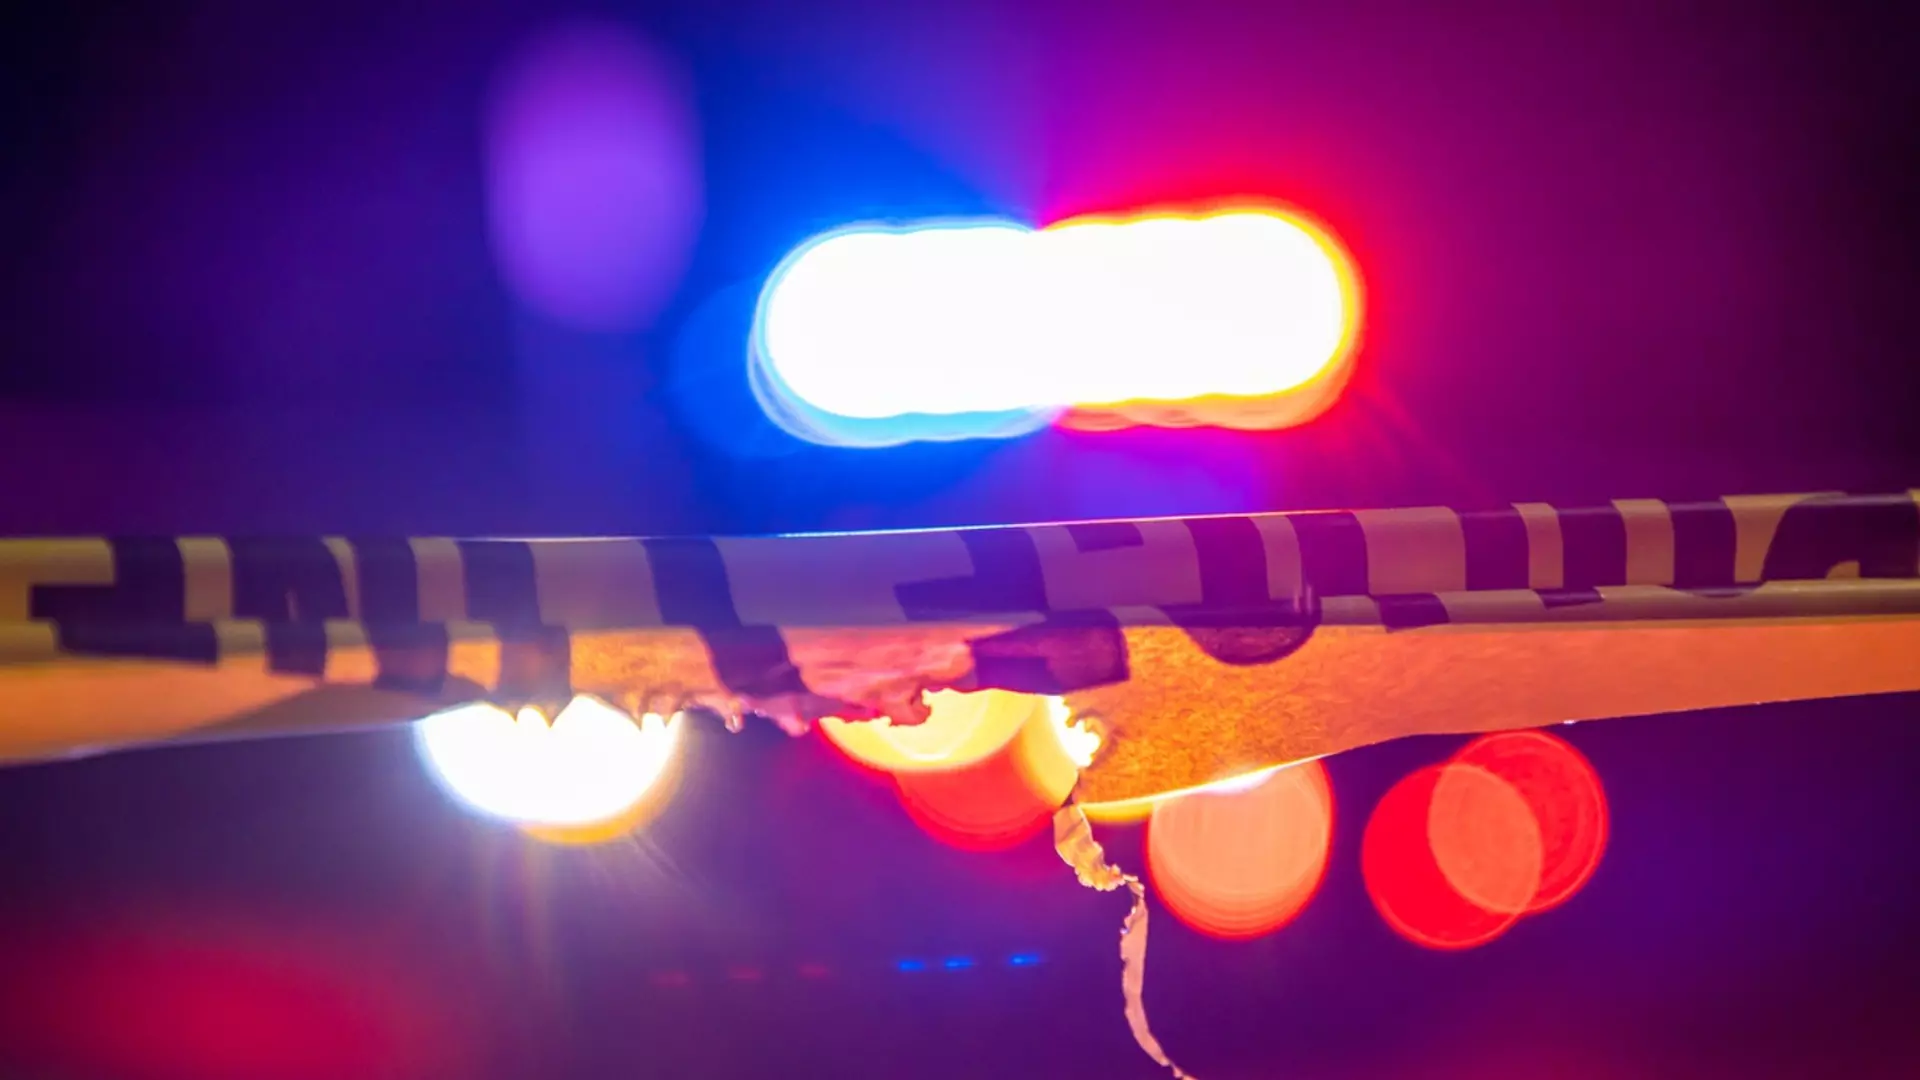 Мъж нападна и намушка 6 души в Масачузетс (ВИДЕО)